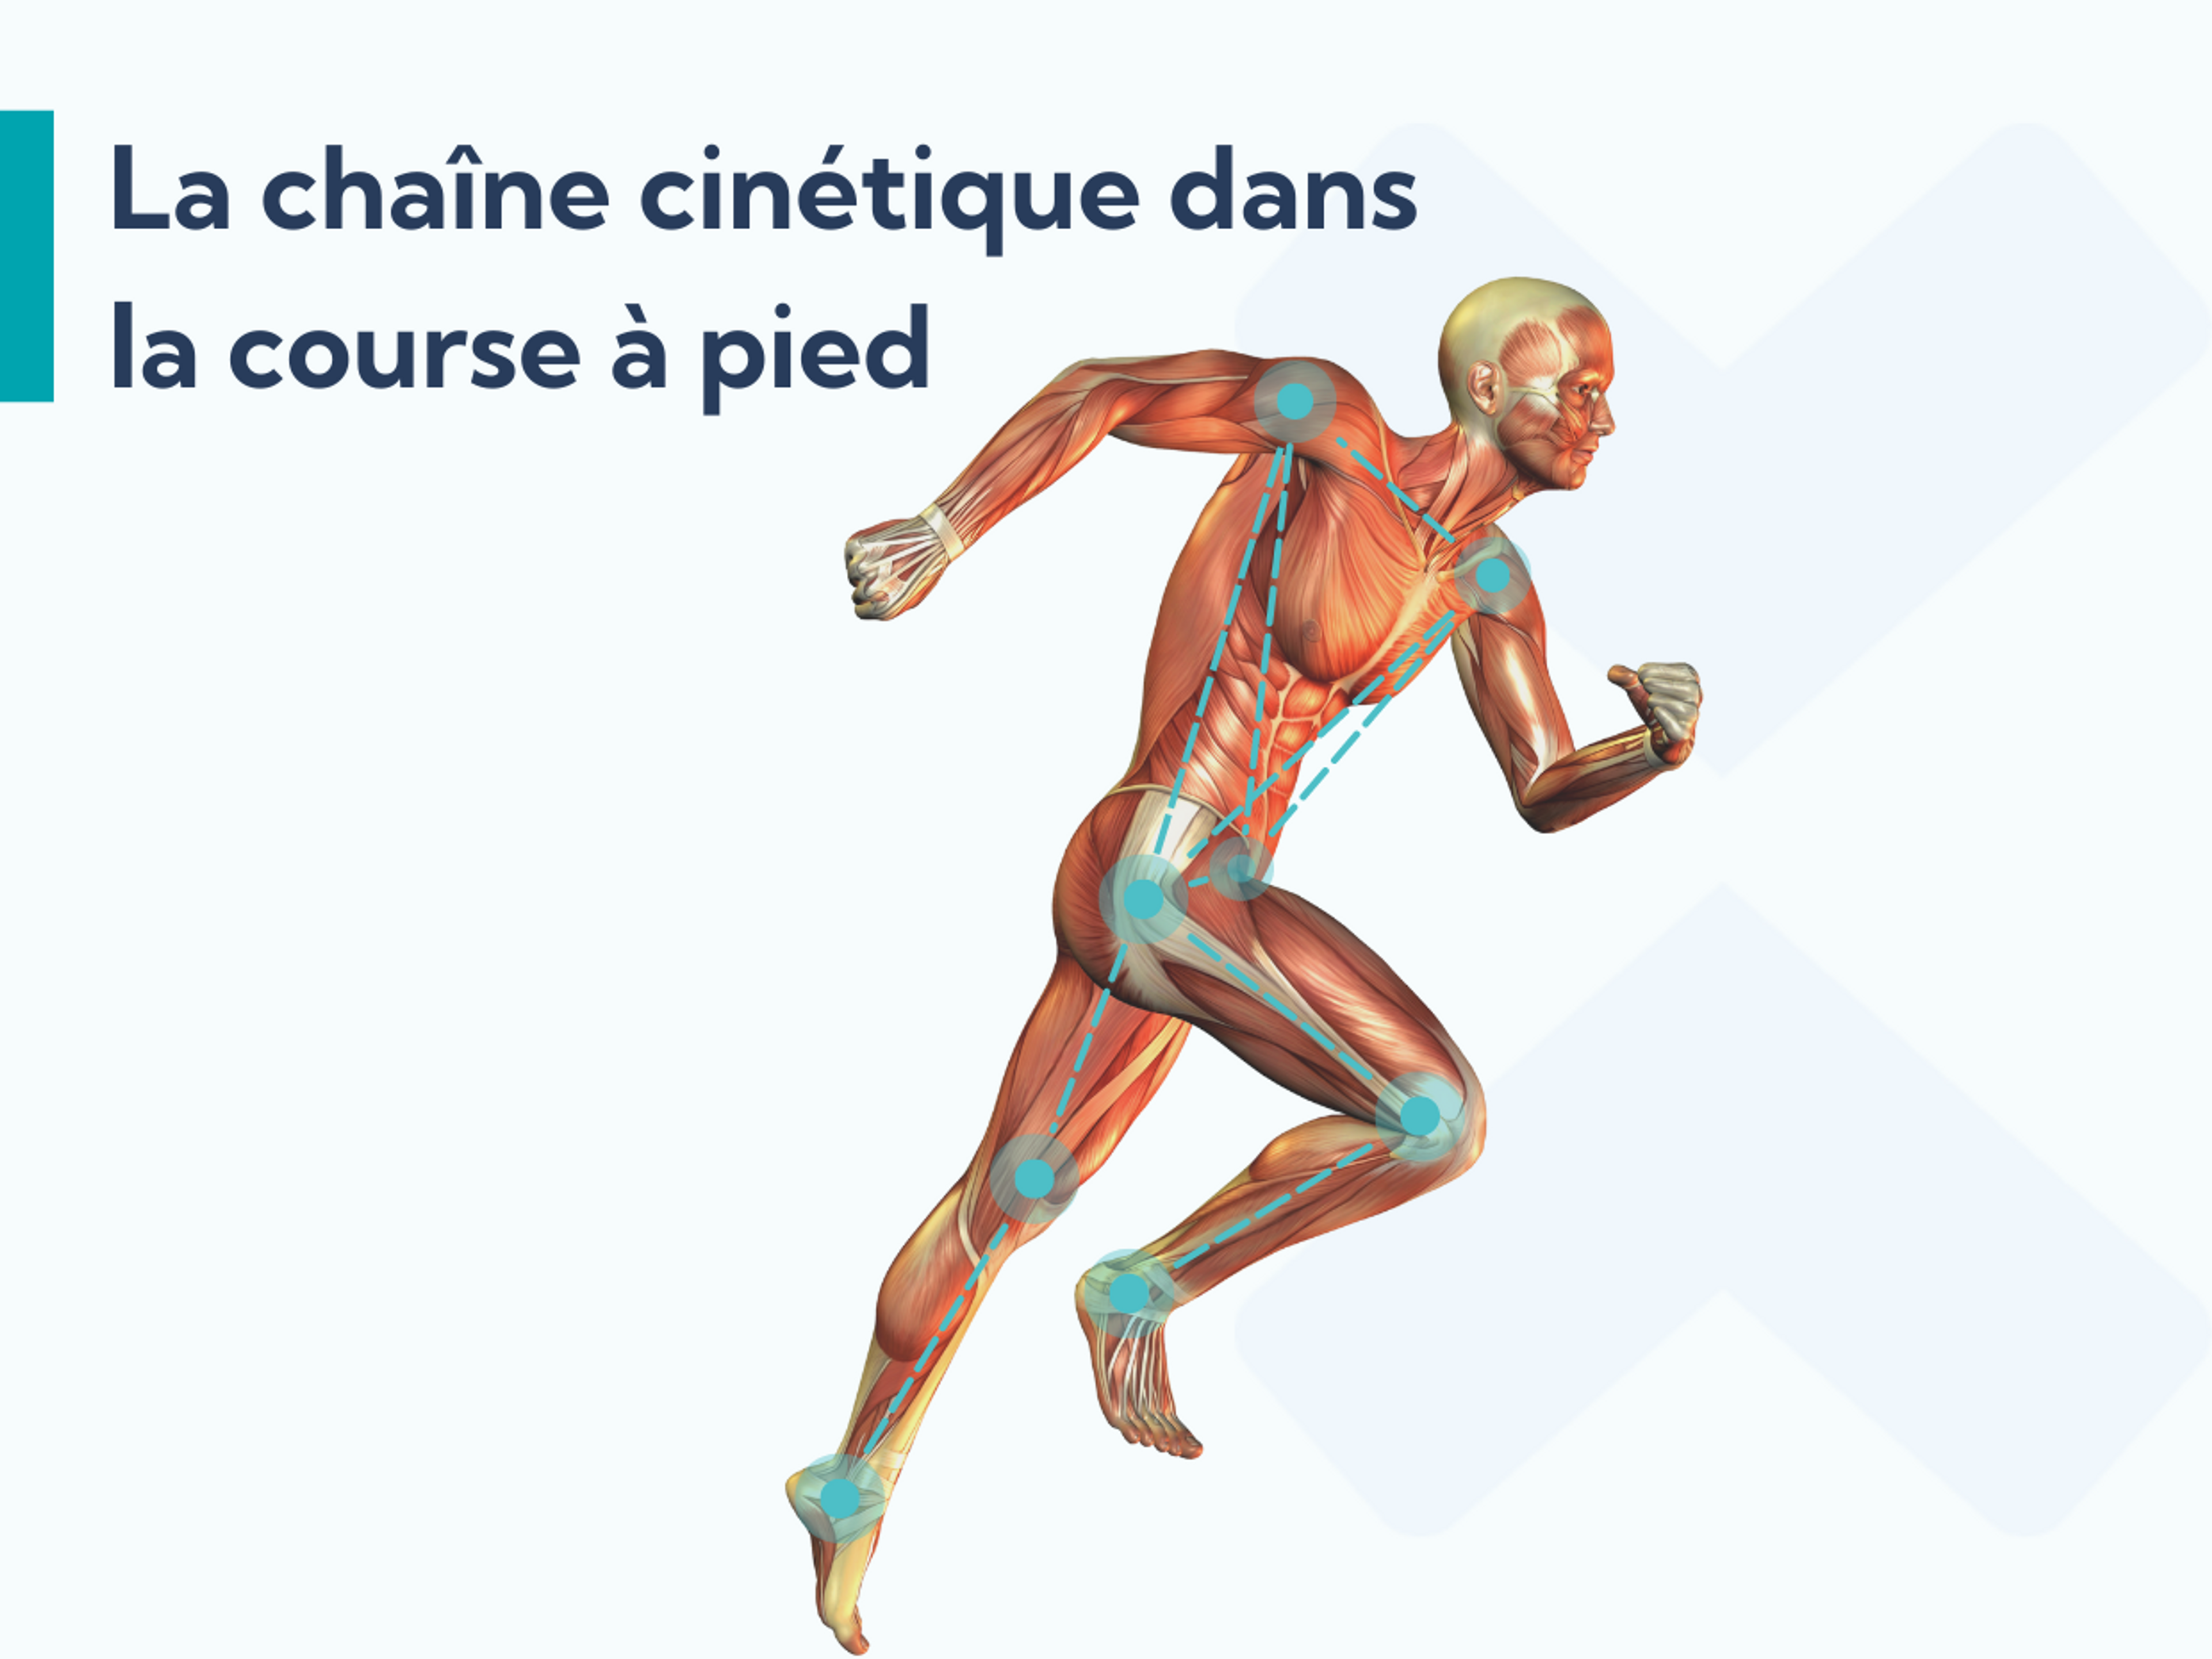 Les exercices de hanche sont utiles pour la fasciite plantaire, car ils améliorent le fonctionnement de la chaîne cinétique lorsque vous courez.